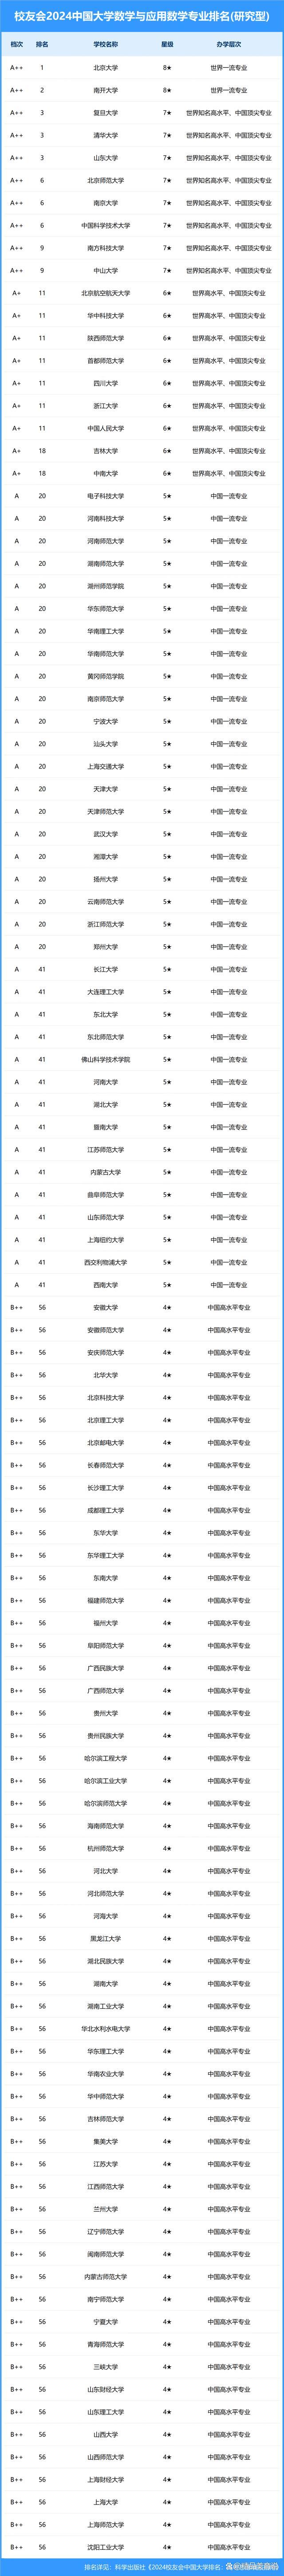 中国数学专业院校排名TOP10 培养数学精英的摇篮